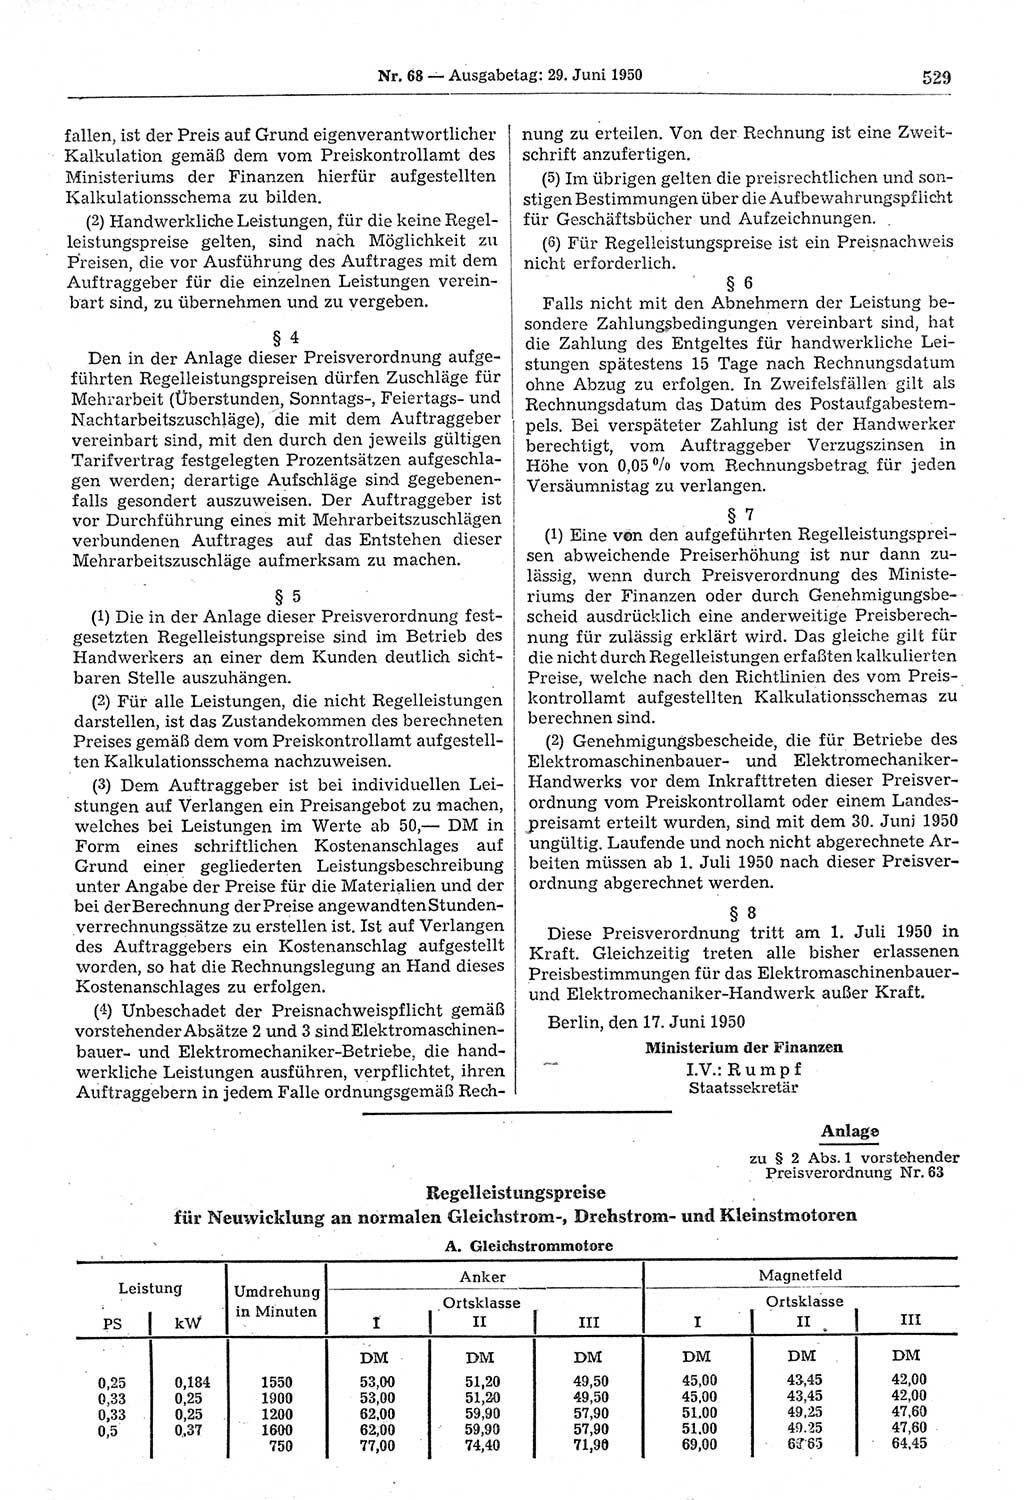 Gesetzblatt (GBl.) der Deutschen Demokratischen Republik (DDR) 1950, Seite 529 (GBl. DDR 1950, S. 529)